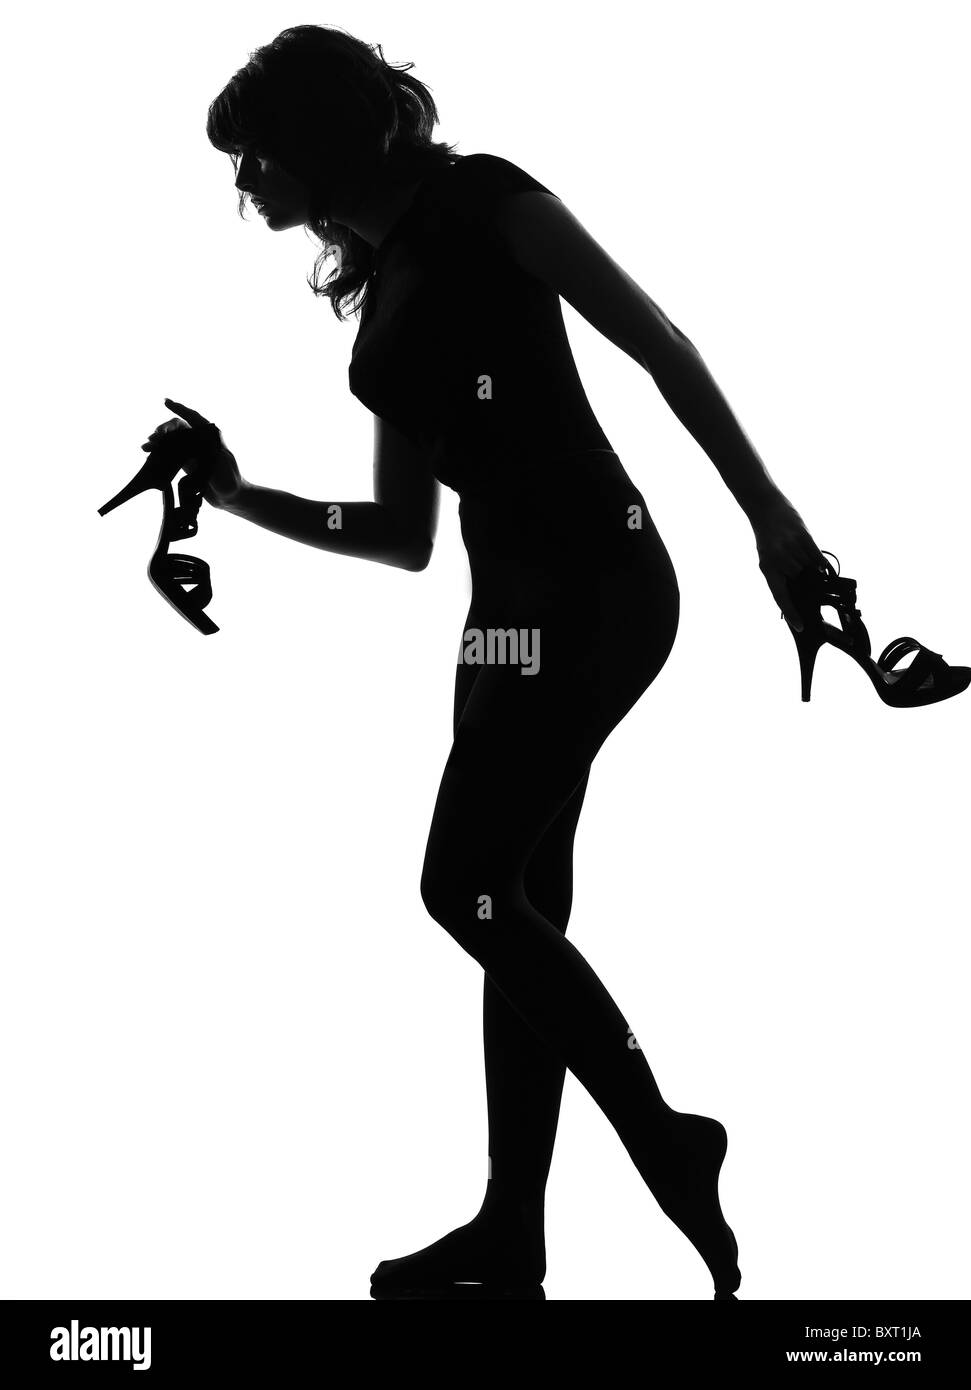 Chaussure Femme Noire À Talons Hauts Isolée Sur Fond Blanc Banque D'Images  et Photos Libres De Droits. Image 40269387